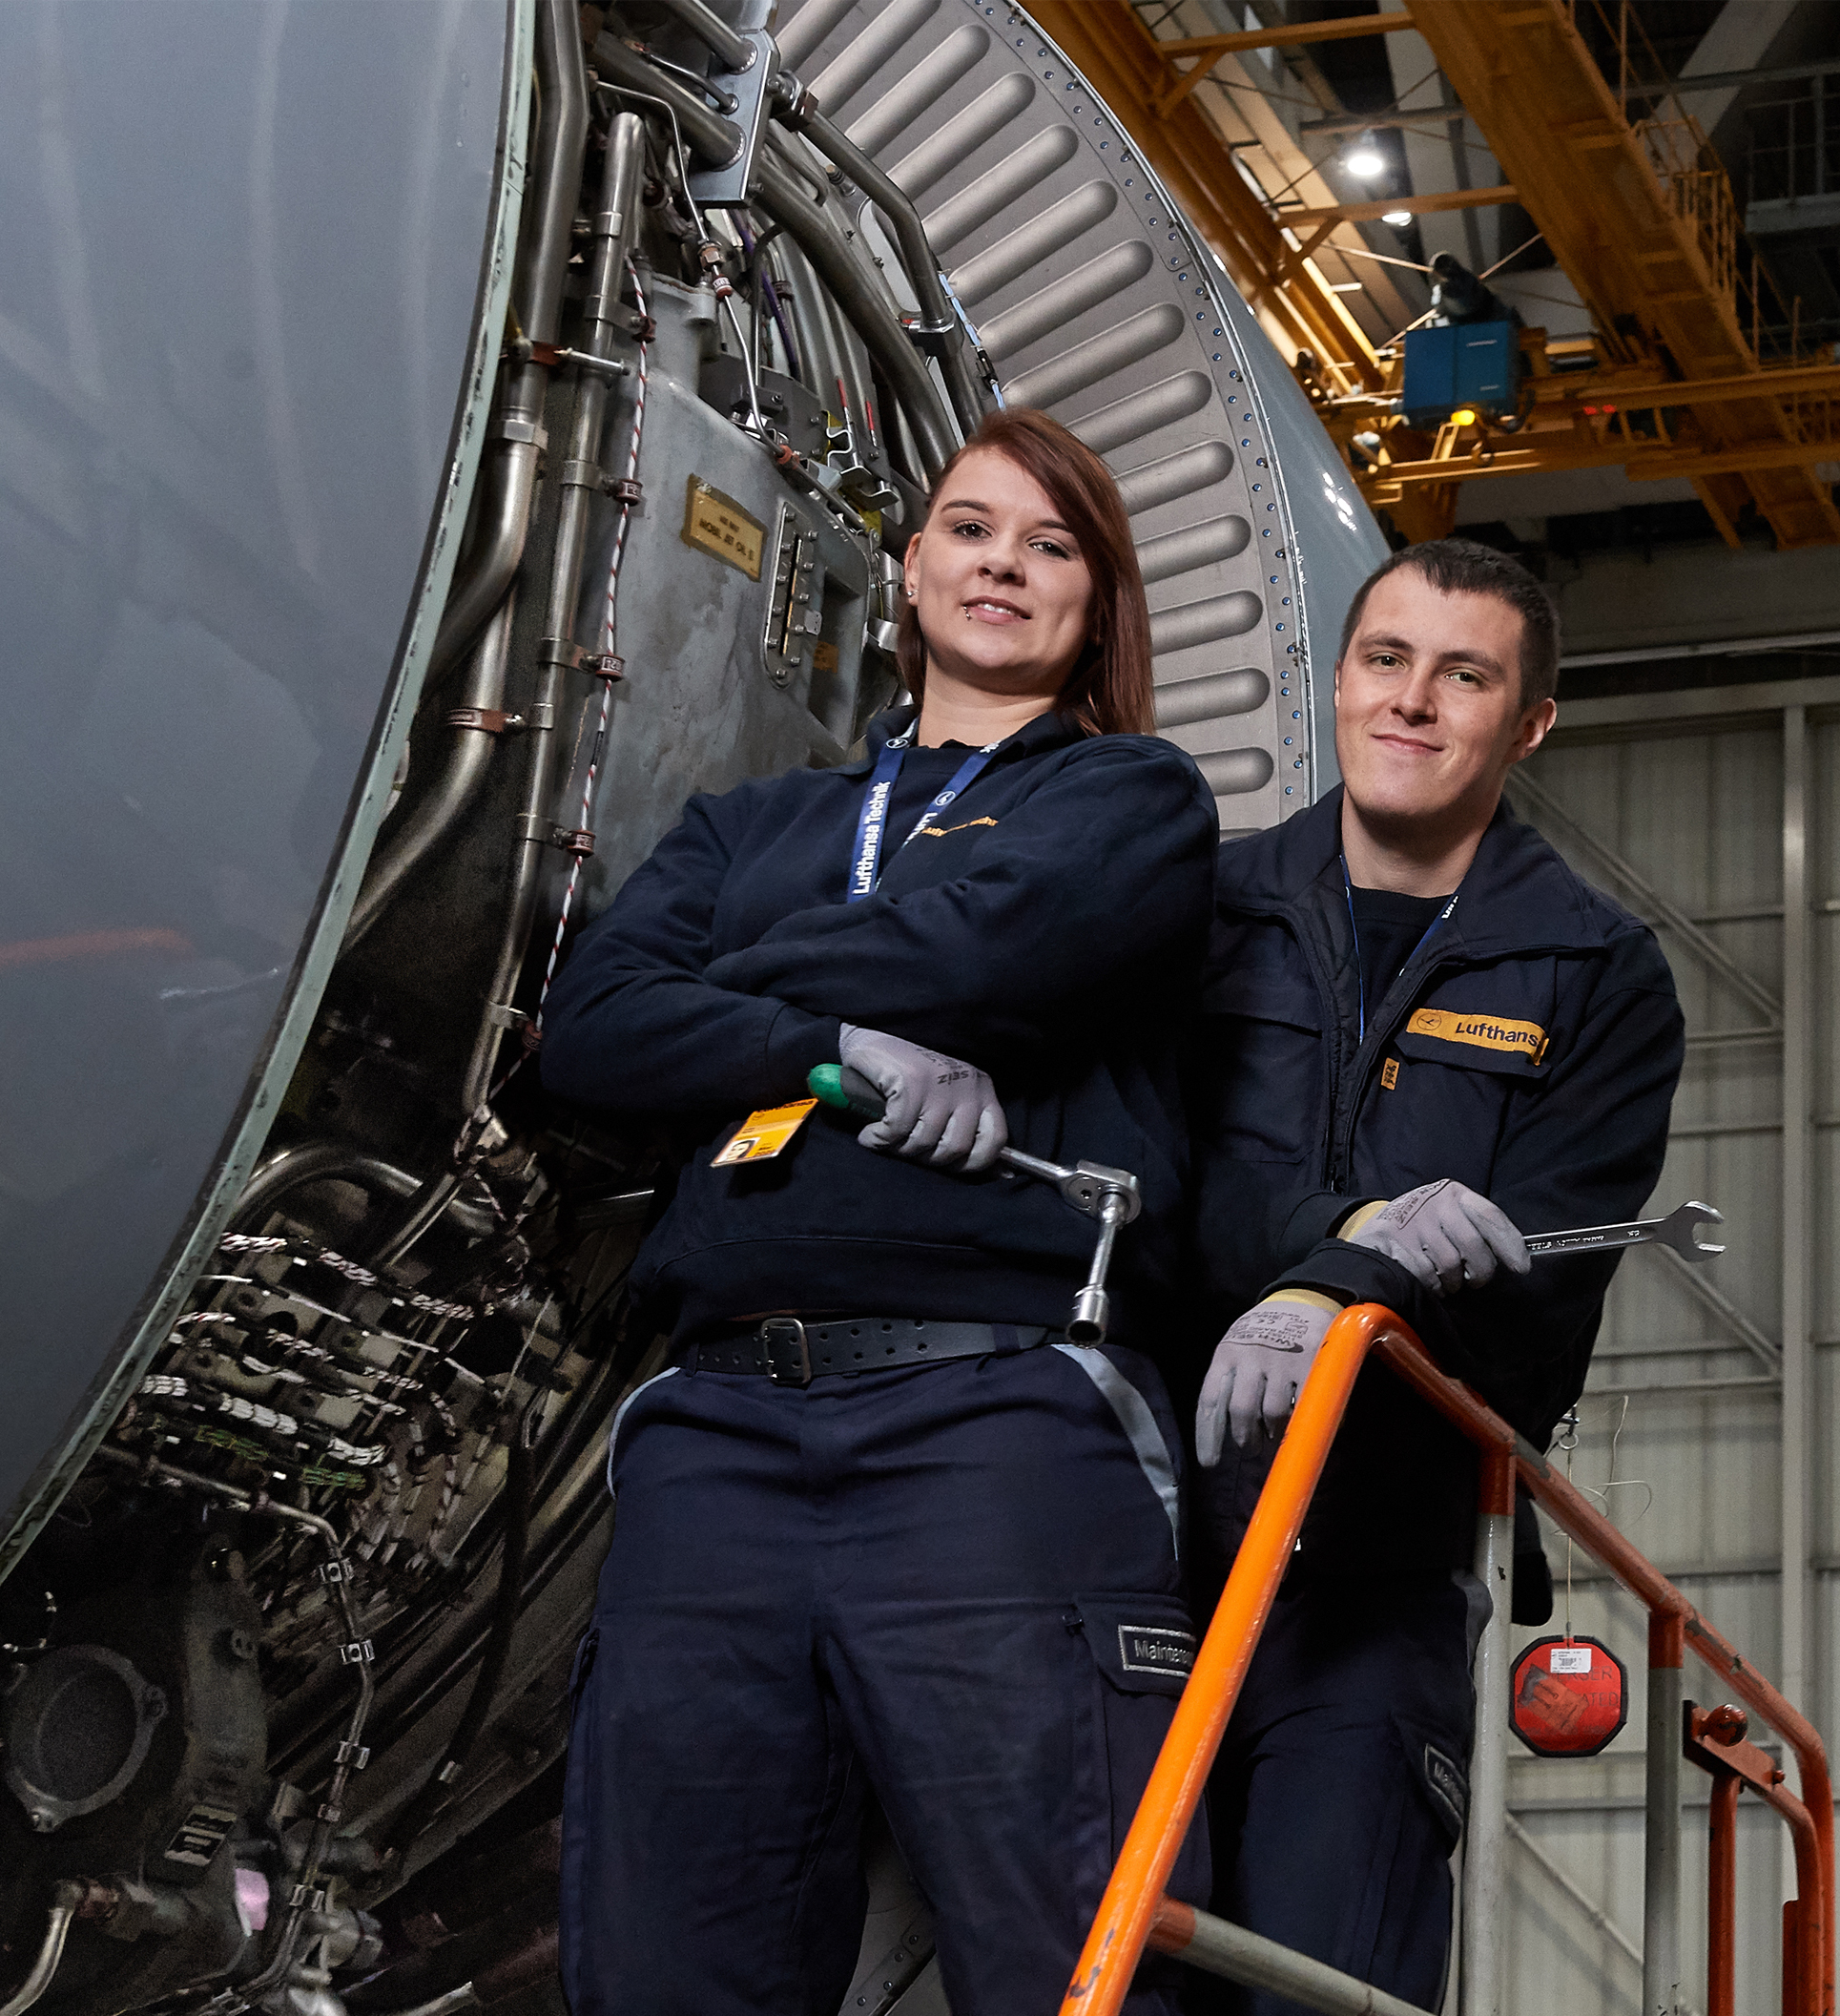 Le groupe allemand recrute également à la maintenance chez Lufthansa Technik en Allemagne, en Autriche, en Suisse et en Belgique. - Lufthansa